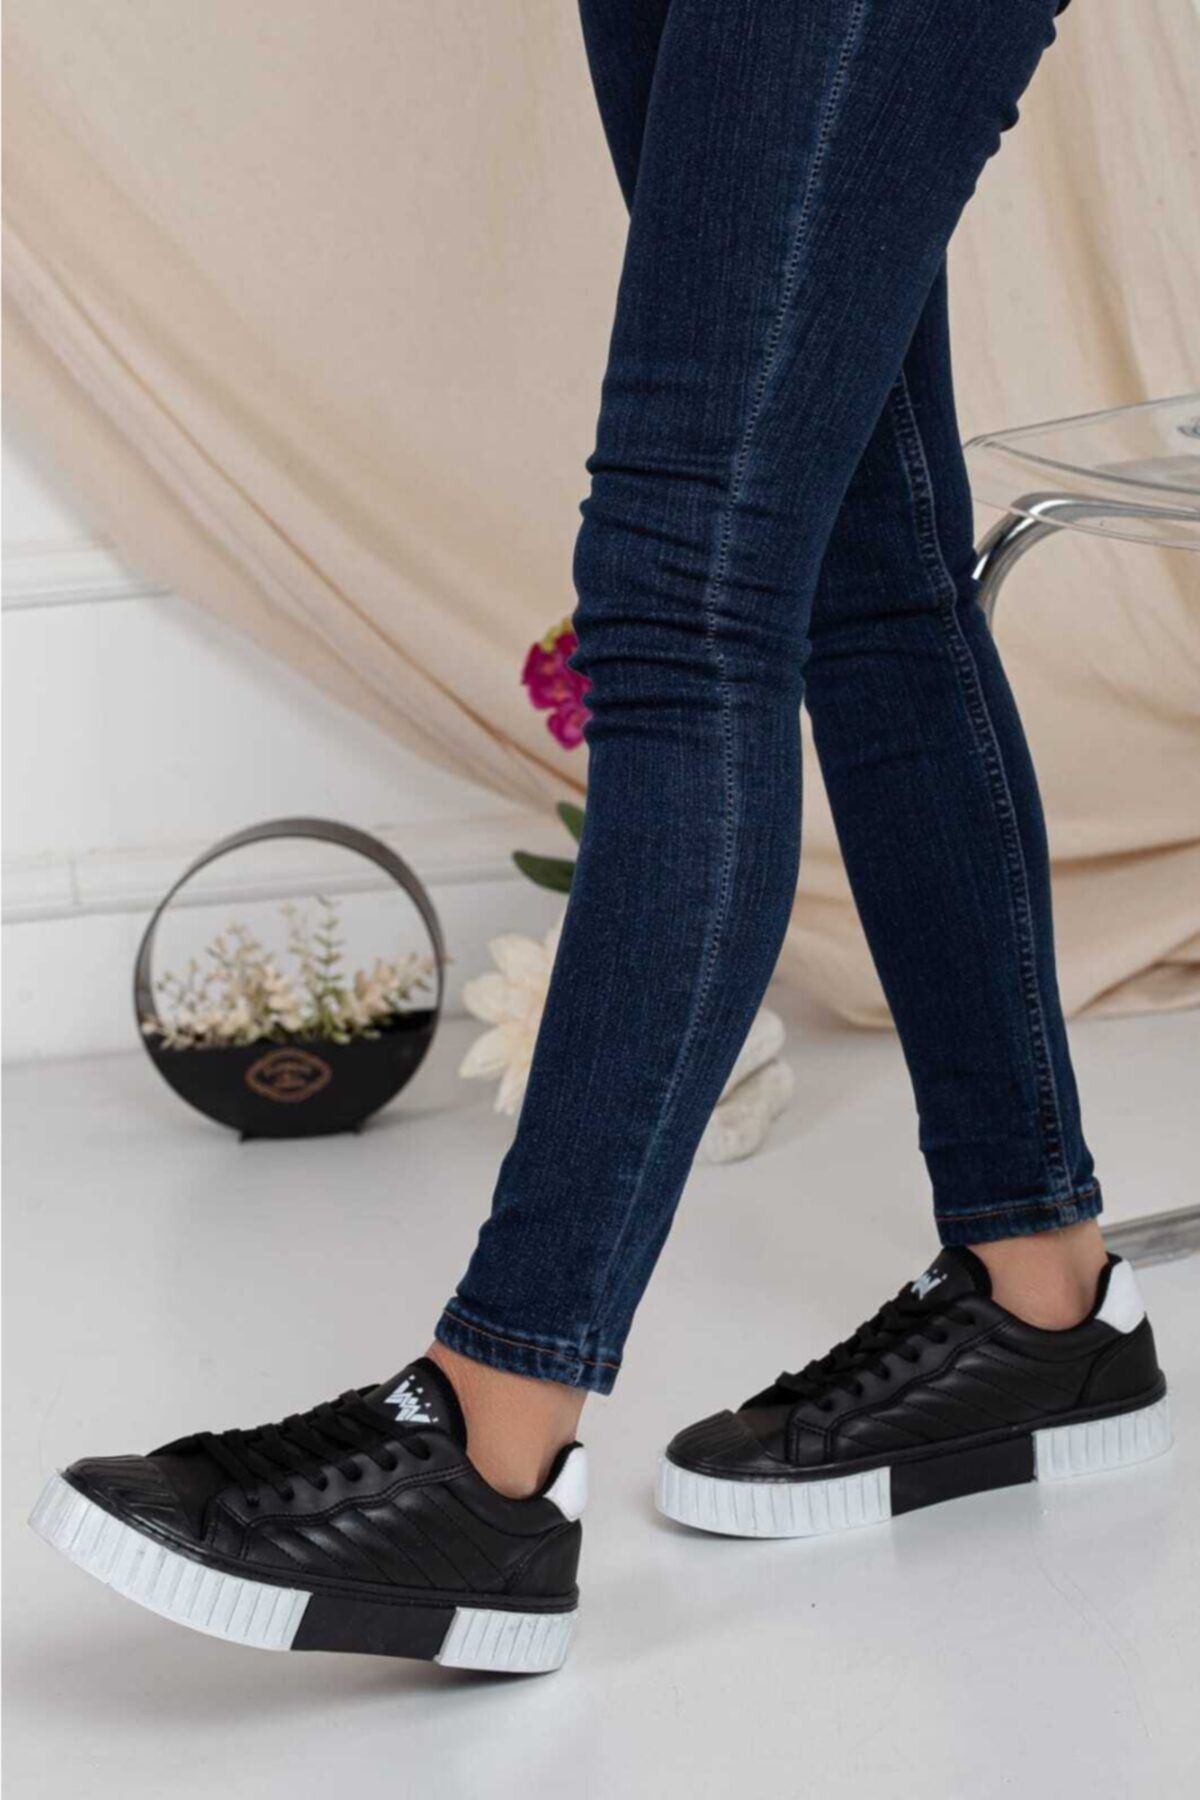 Odal Shoes Kadın-erkek Ünisex Dikişli Perfect Siyah-beyaz Sneaker